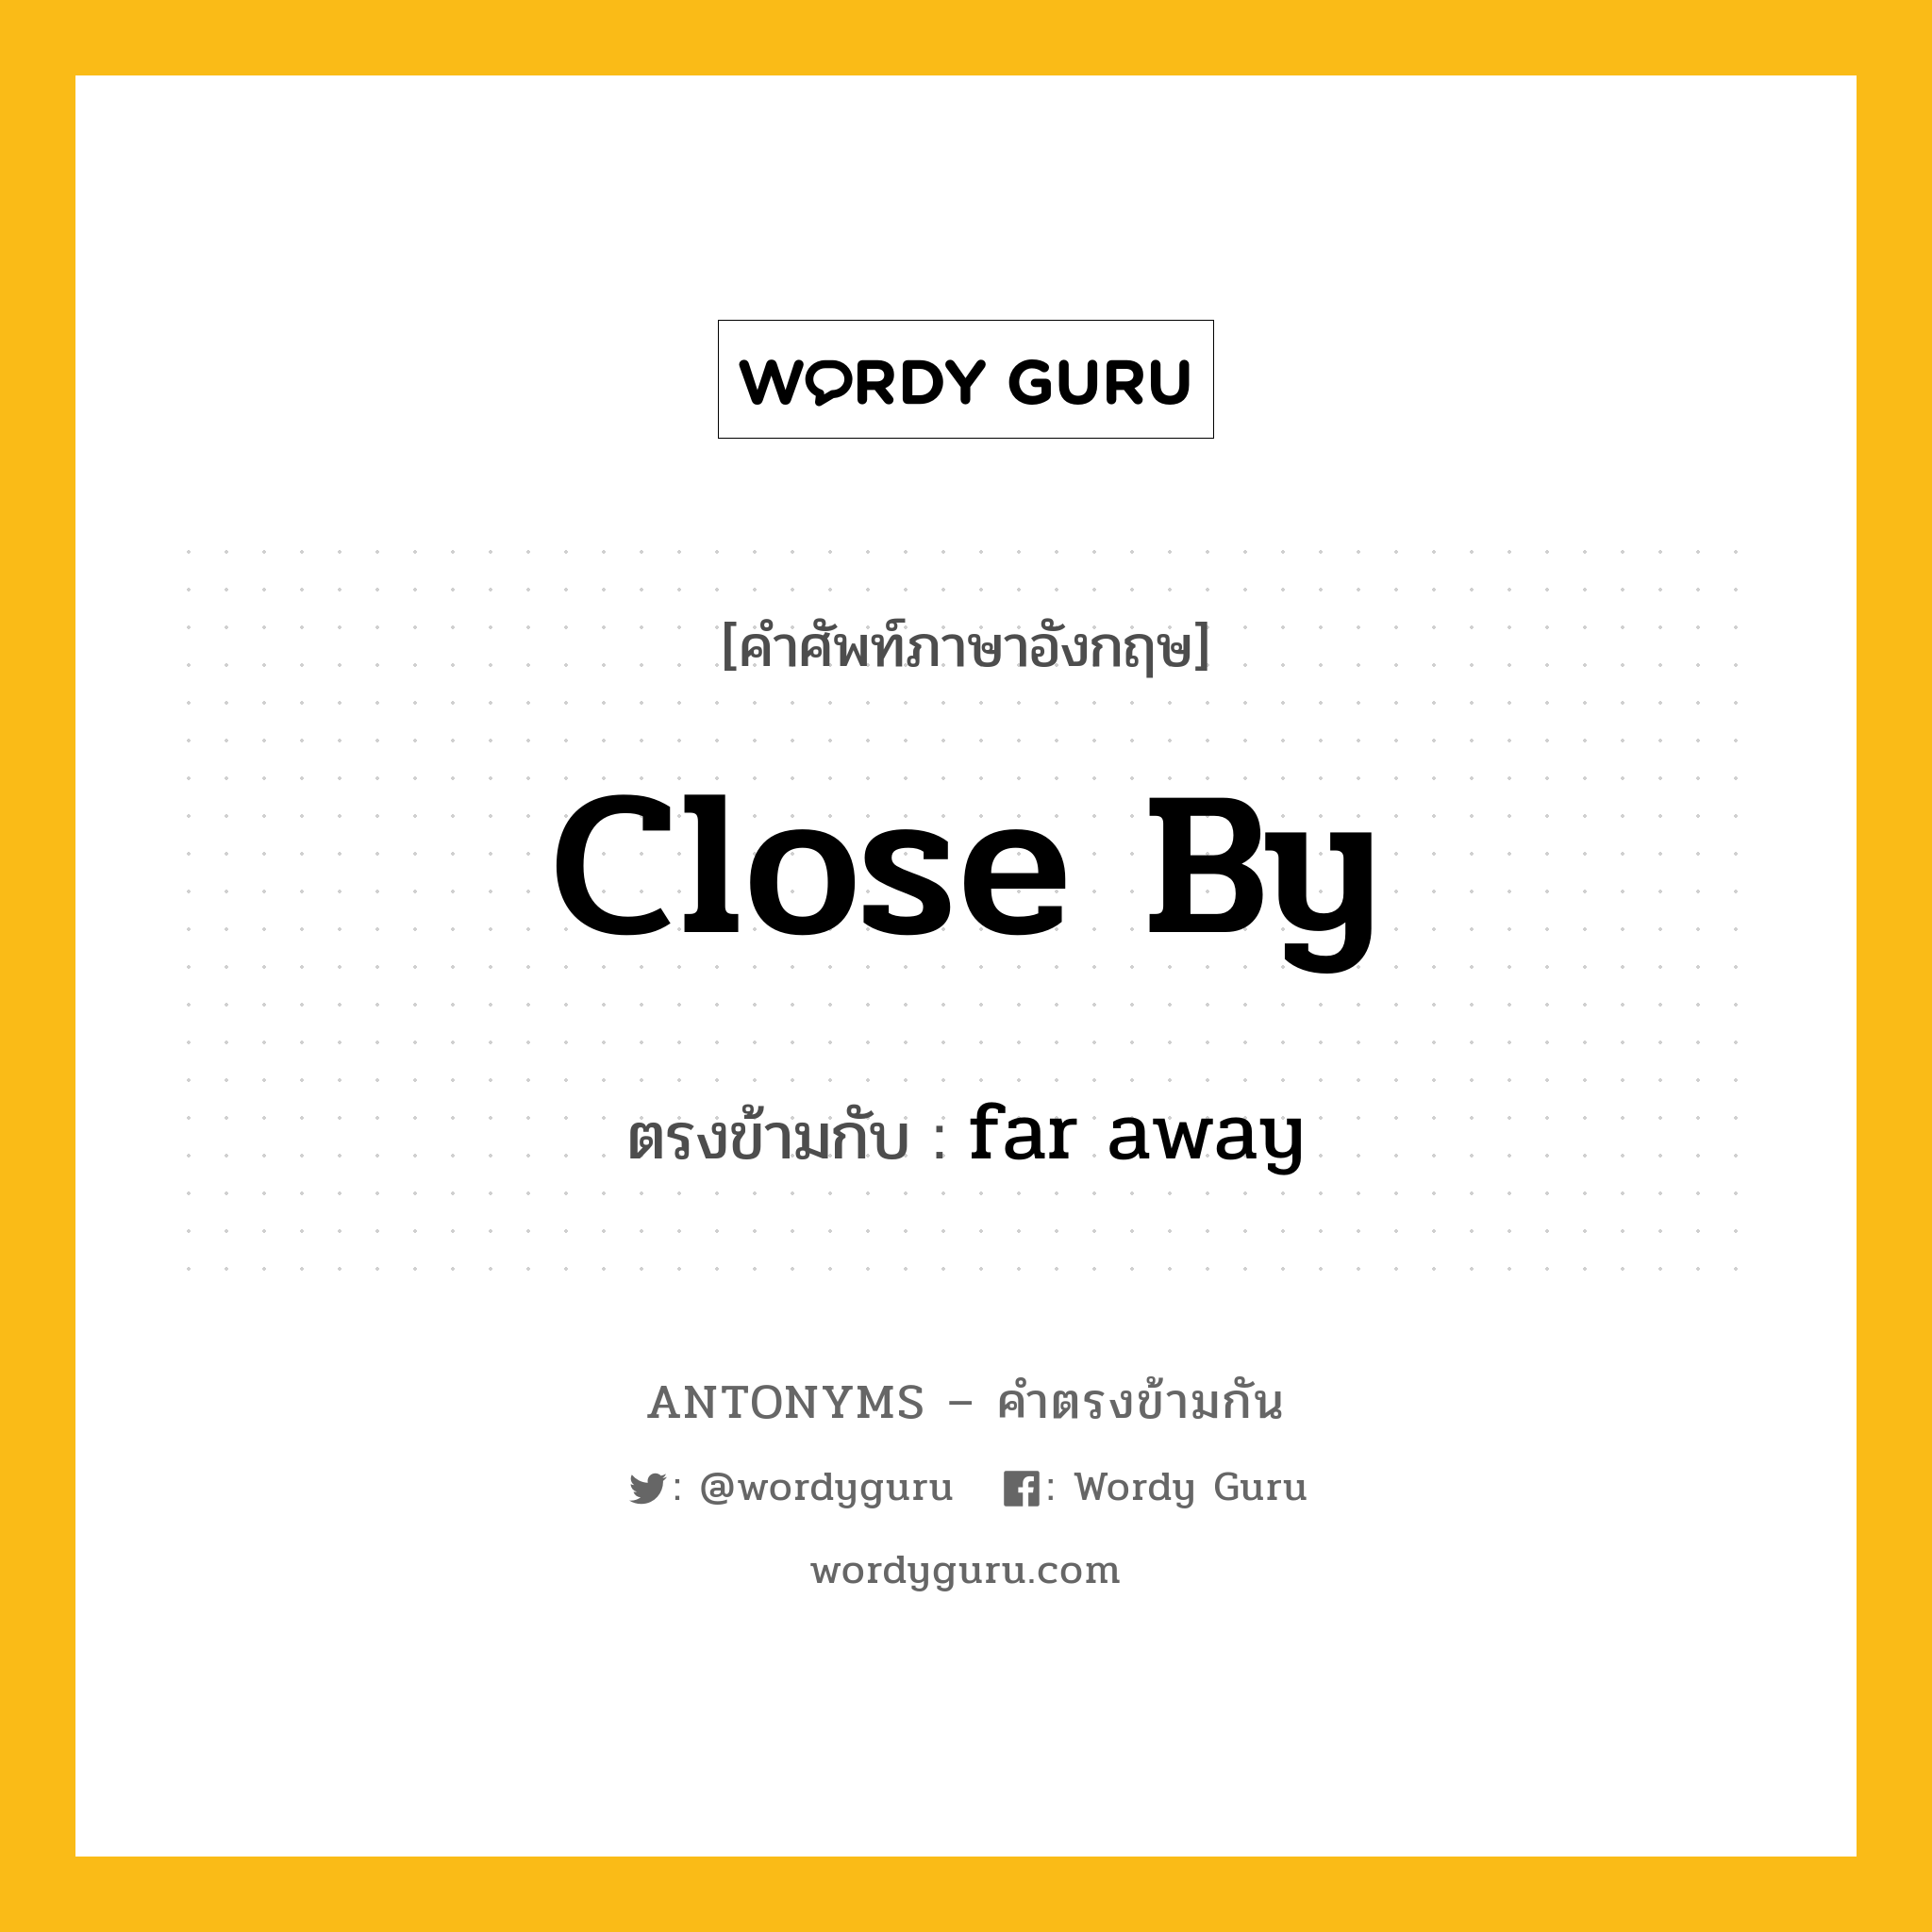 close by เป็นคำตรงข้ามกับคำไหนบ้าง?, คำศัพท์ภาษาอังกฤษ close by ตรงข้ามกับ far away หมวด far away